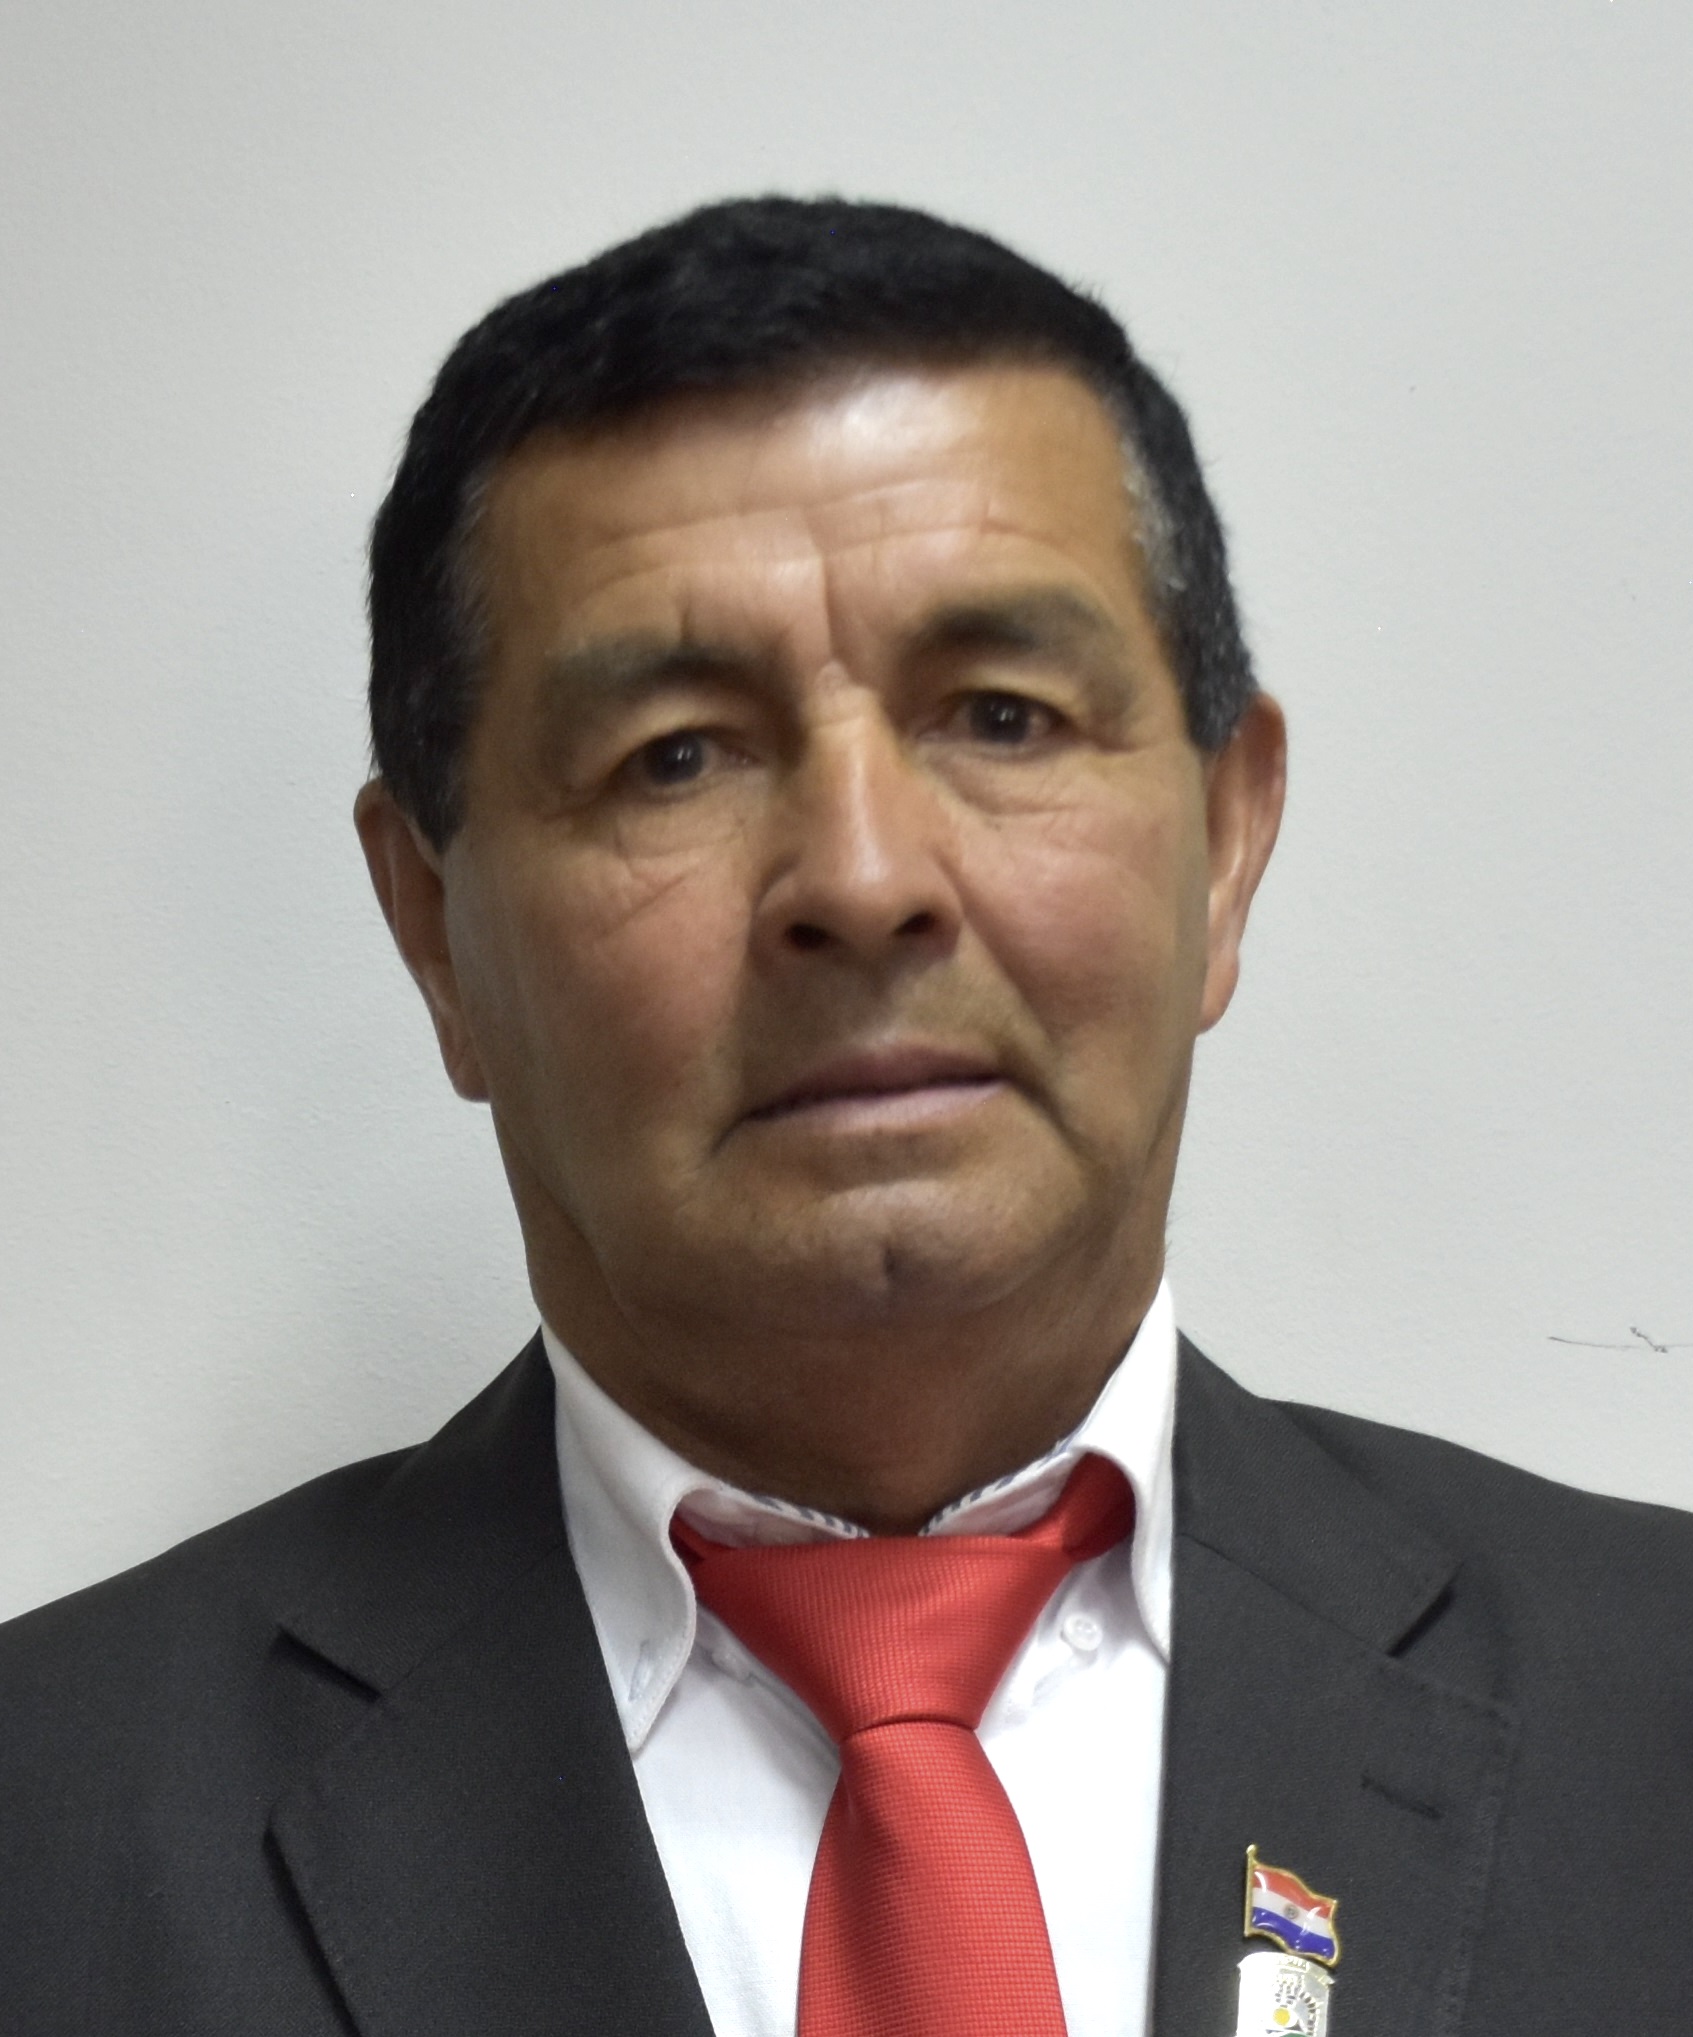 Jorge Davalos